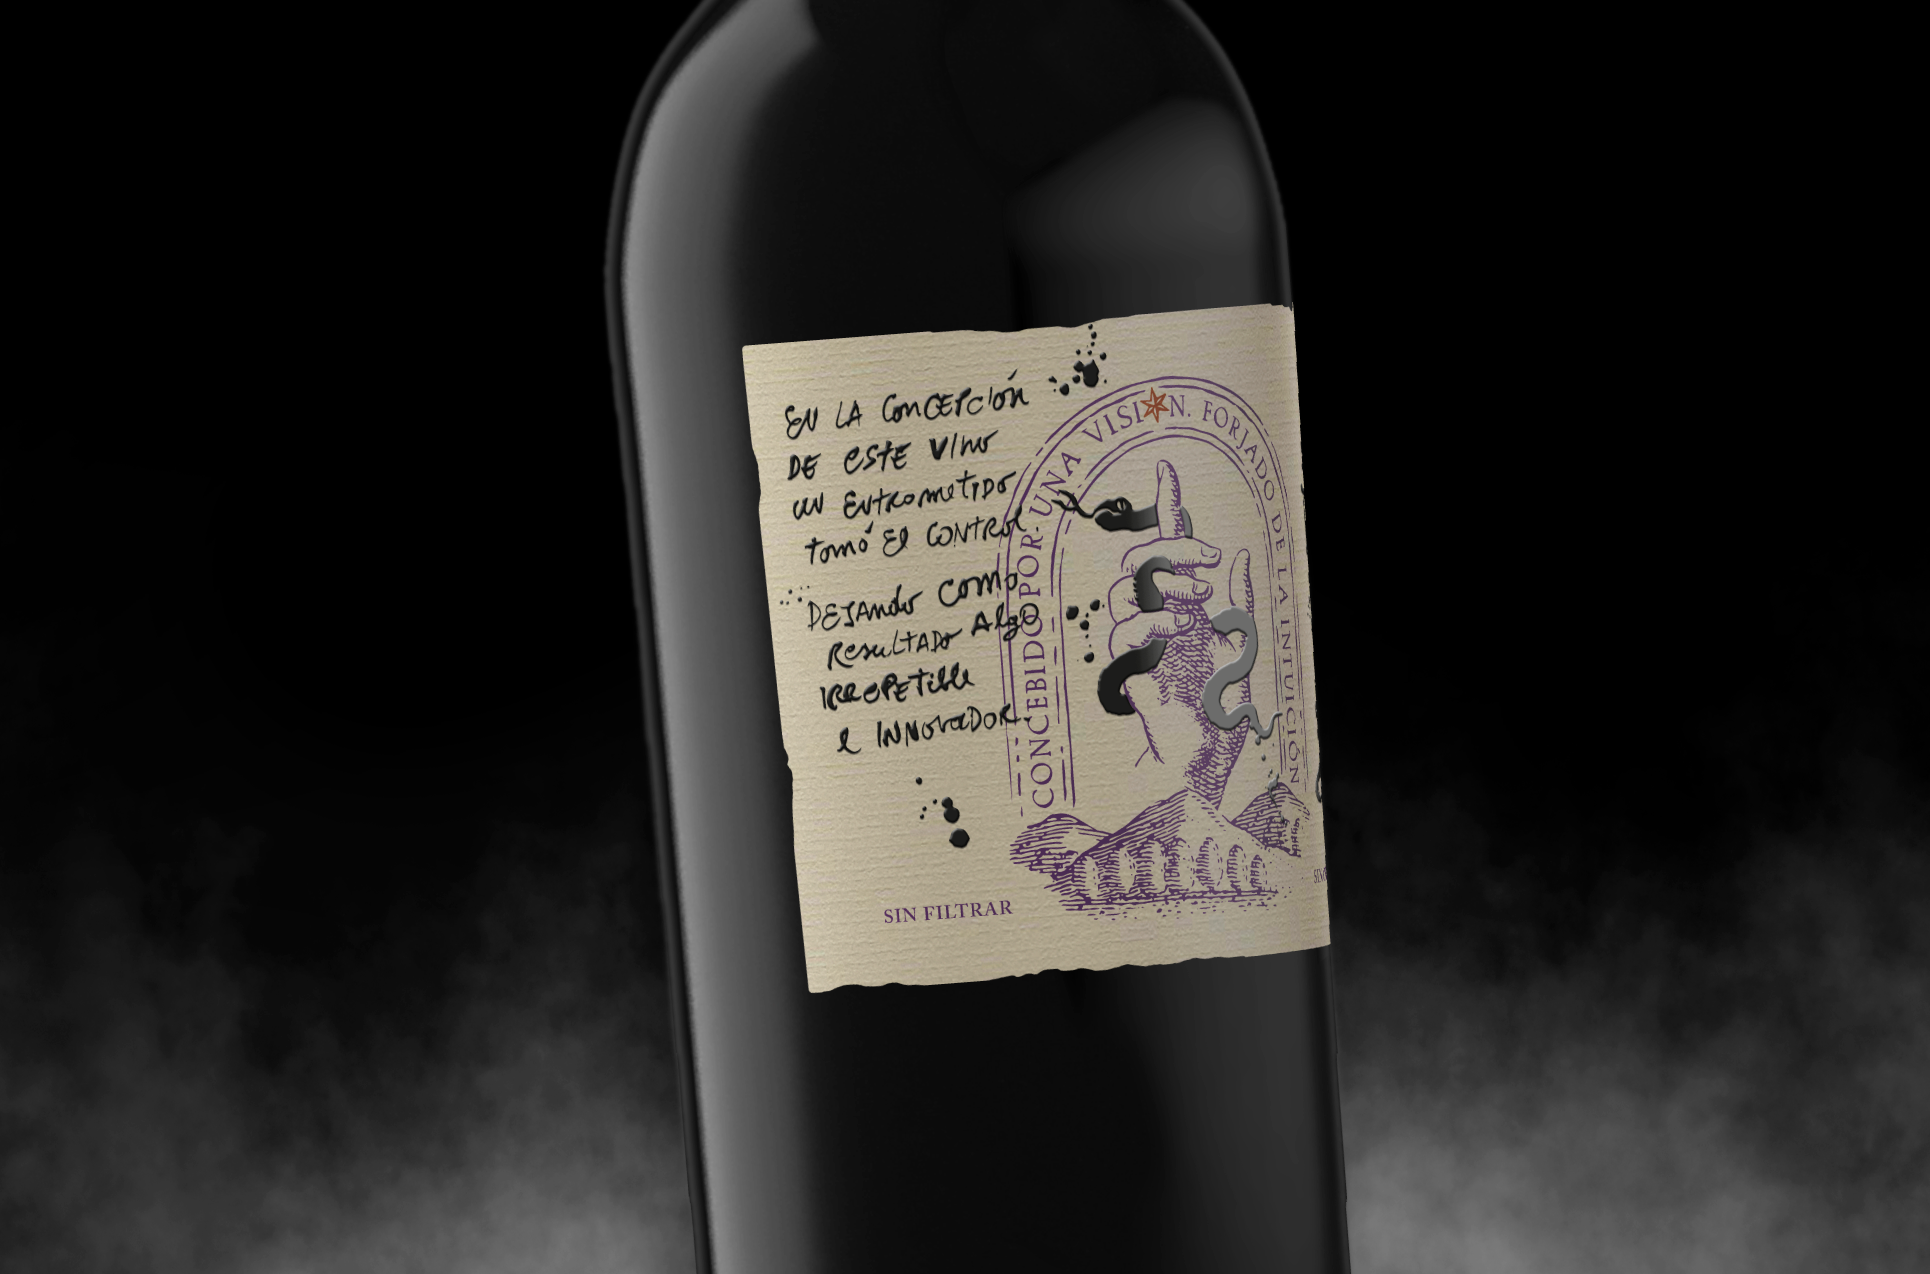 Elegant and Stylish Artistically Intervened Wine Label Design by Jacomy Mayne